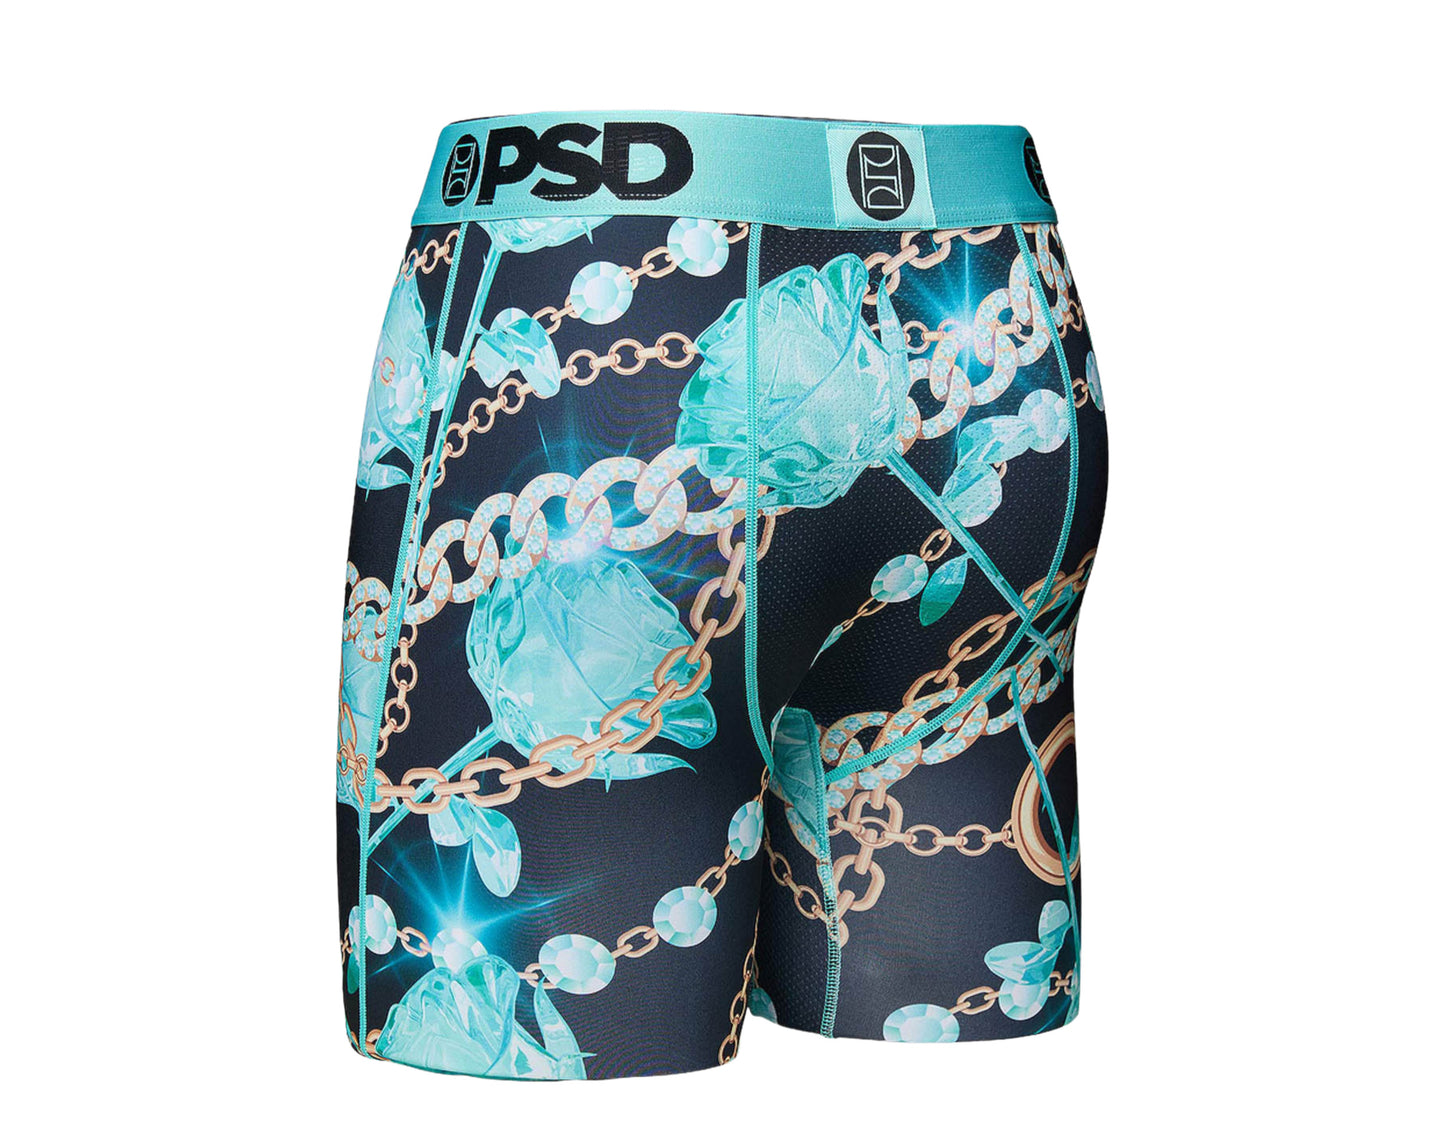 PSD Warface & CO. Boxer Briefs Men's Underwear